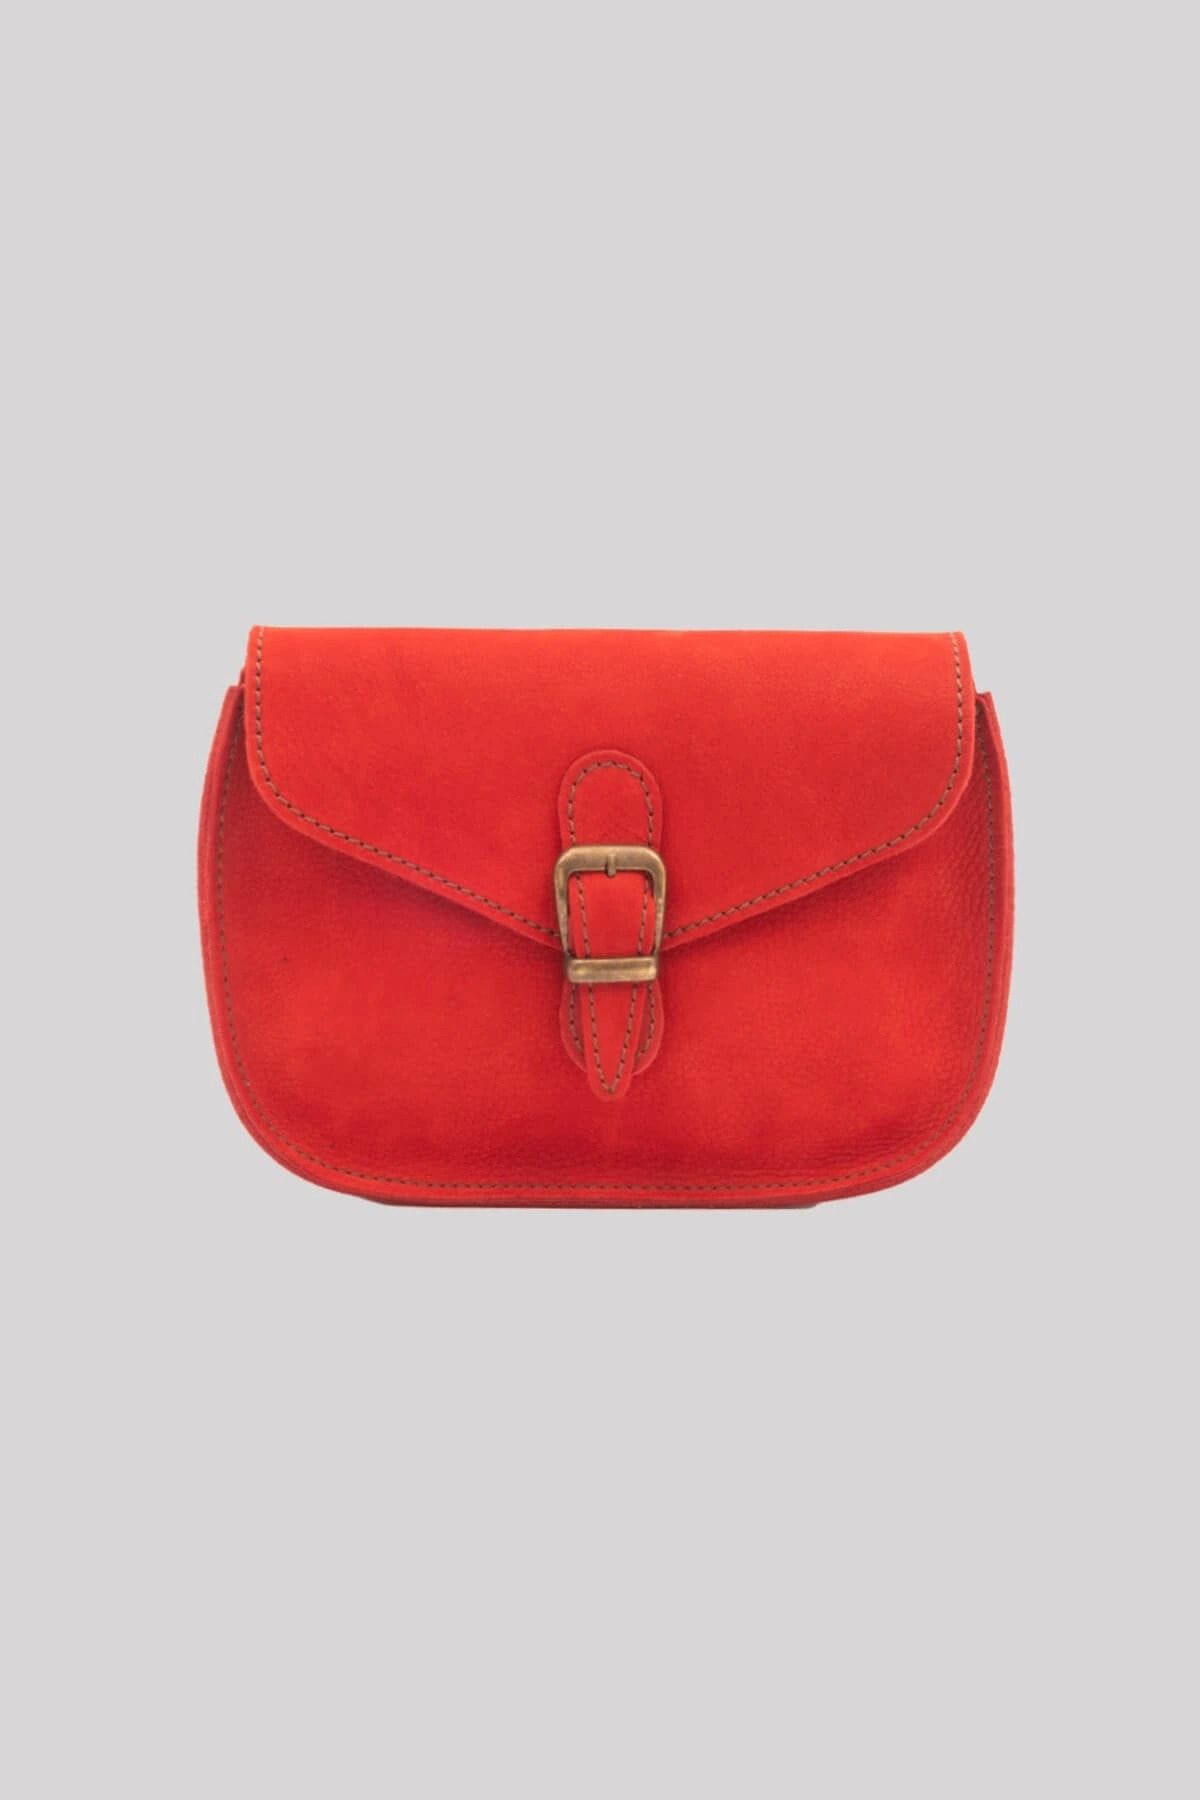 Galata Leather El Yapımı Kadın Deri Postacı Çantası - Barcelona - Kırmızı